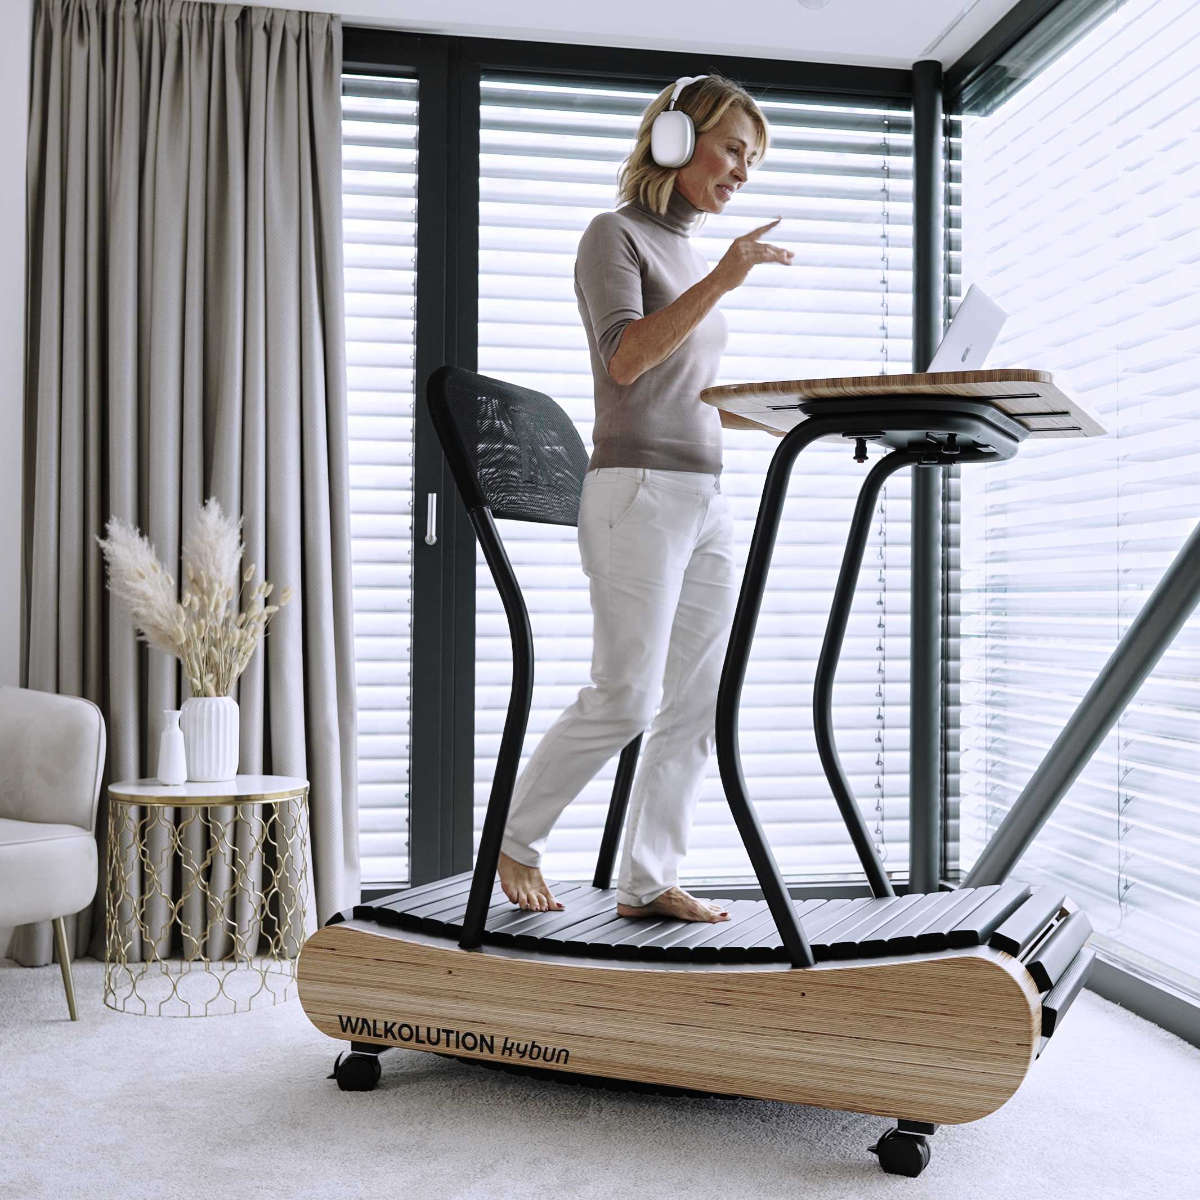 Wooden treadmill, manual treadmill, walking treadmill, treadmill desk, height adjustable desk, soft WALKOLUTION 